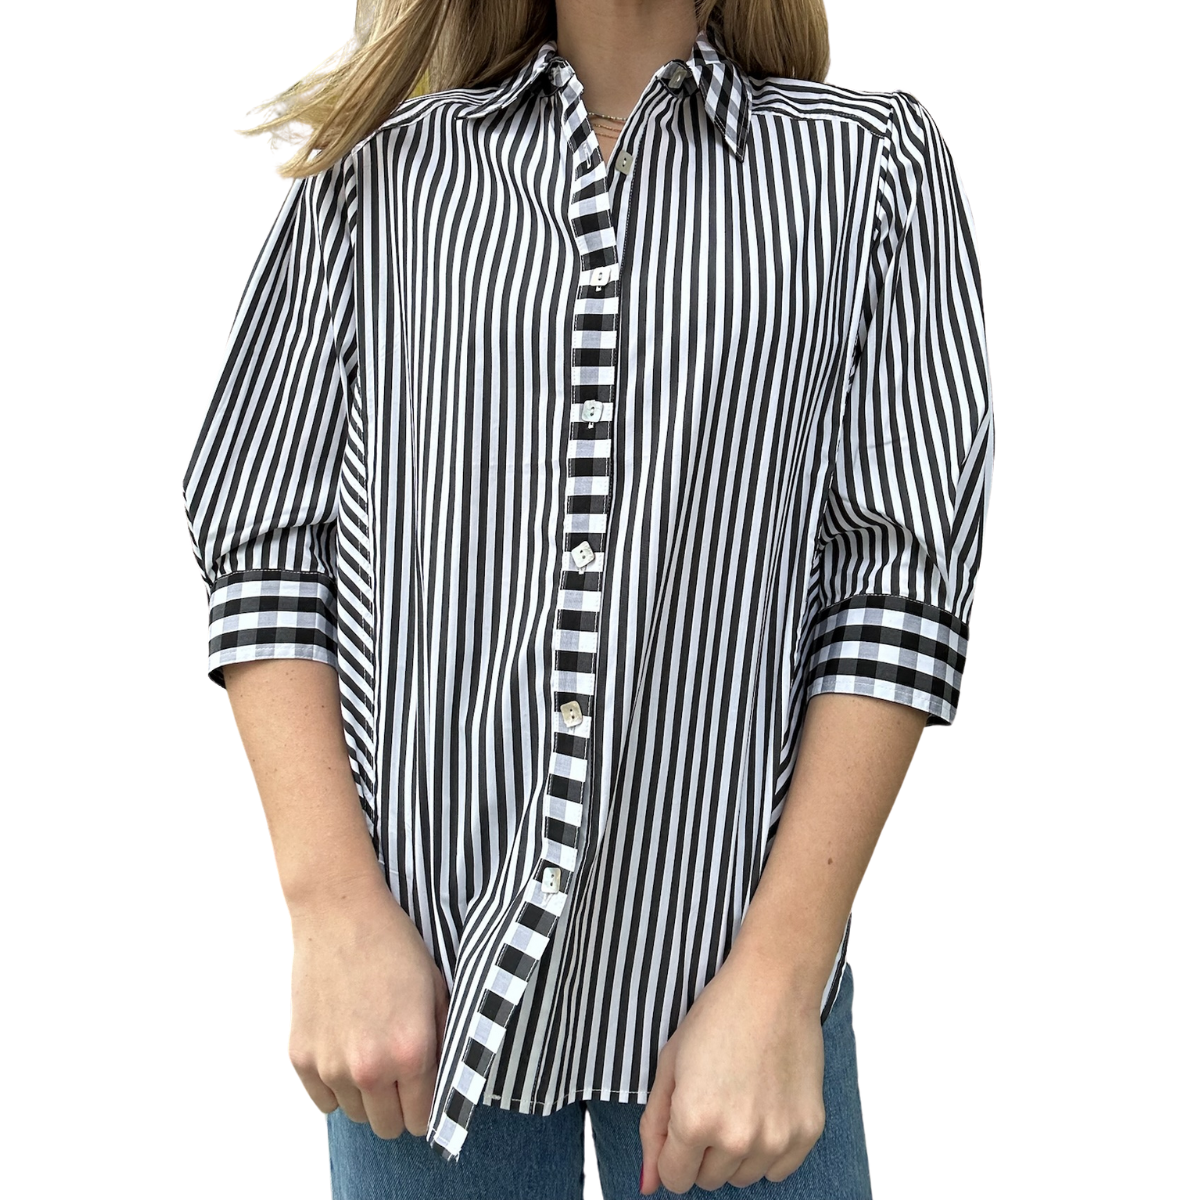 Heidi Stripe bottom Front Check Combo Shirt - Black/White